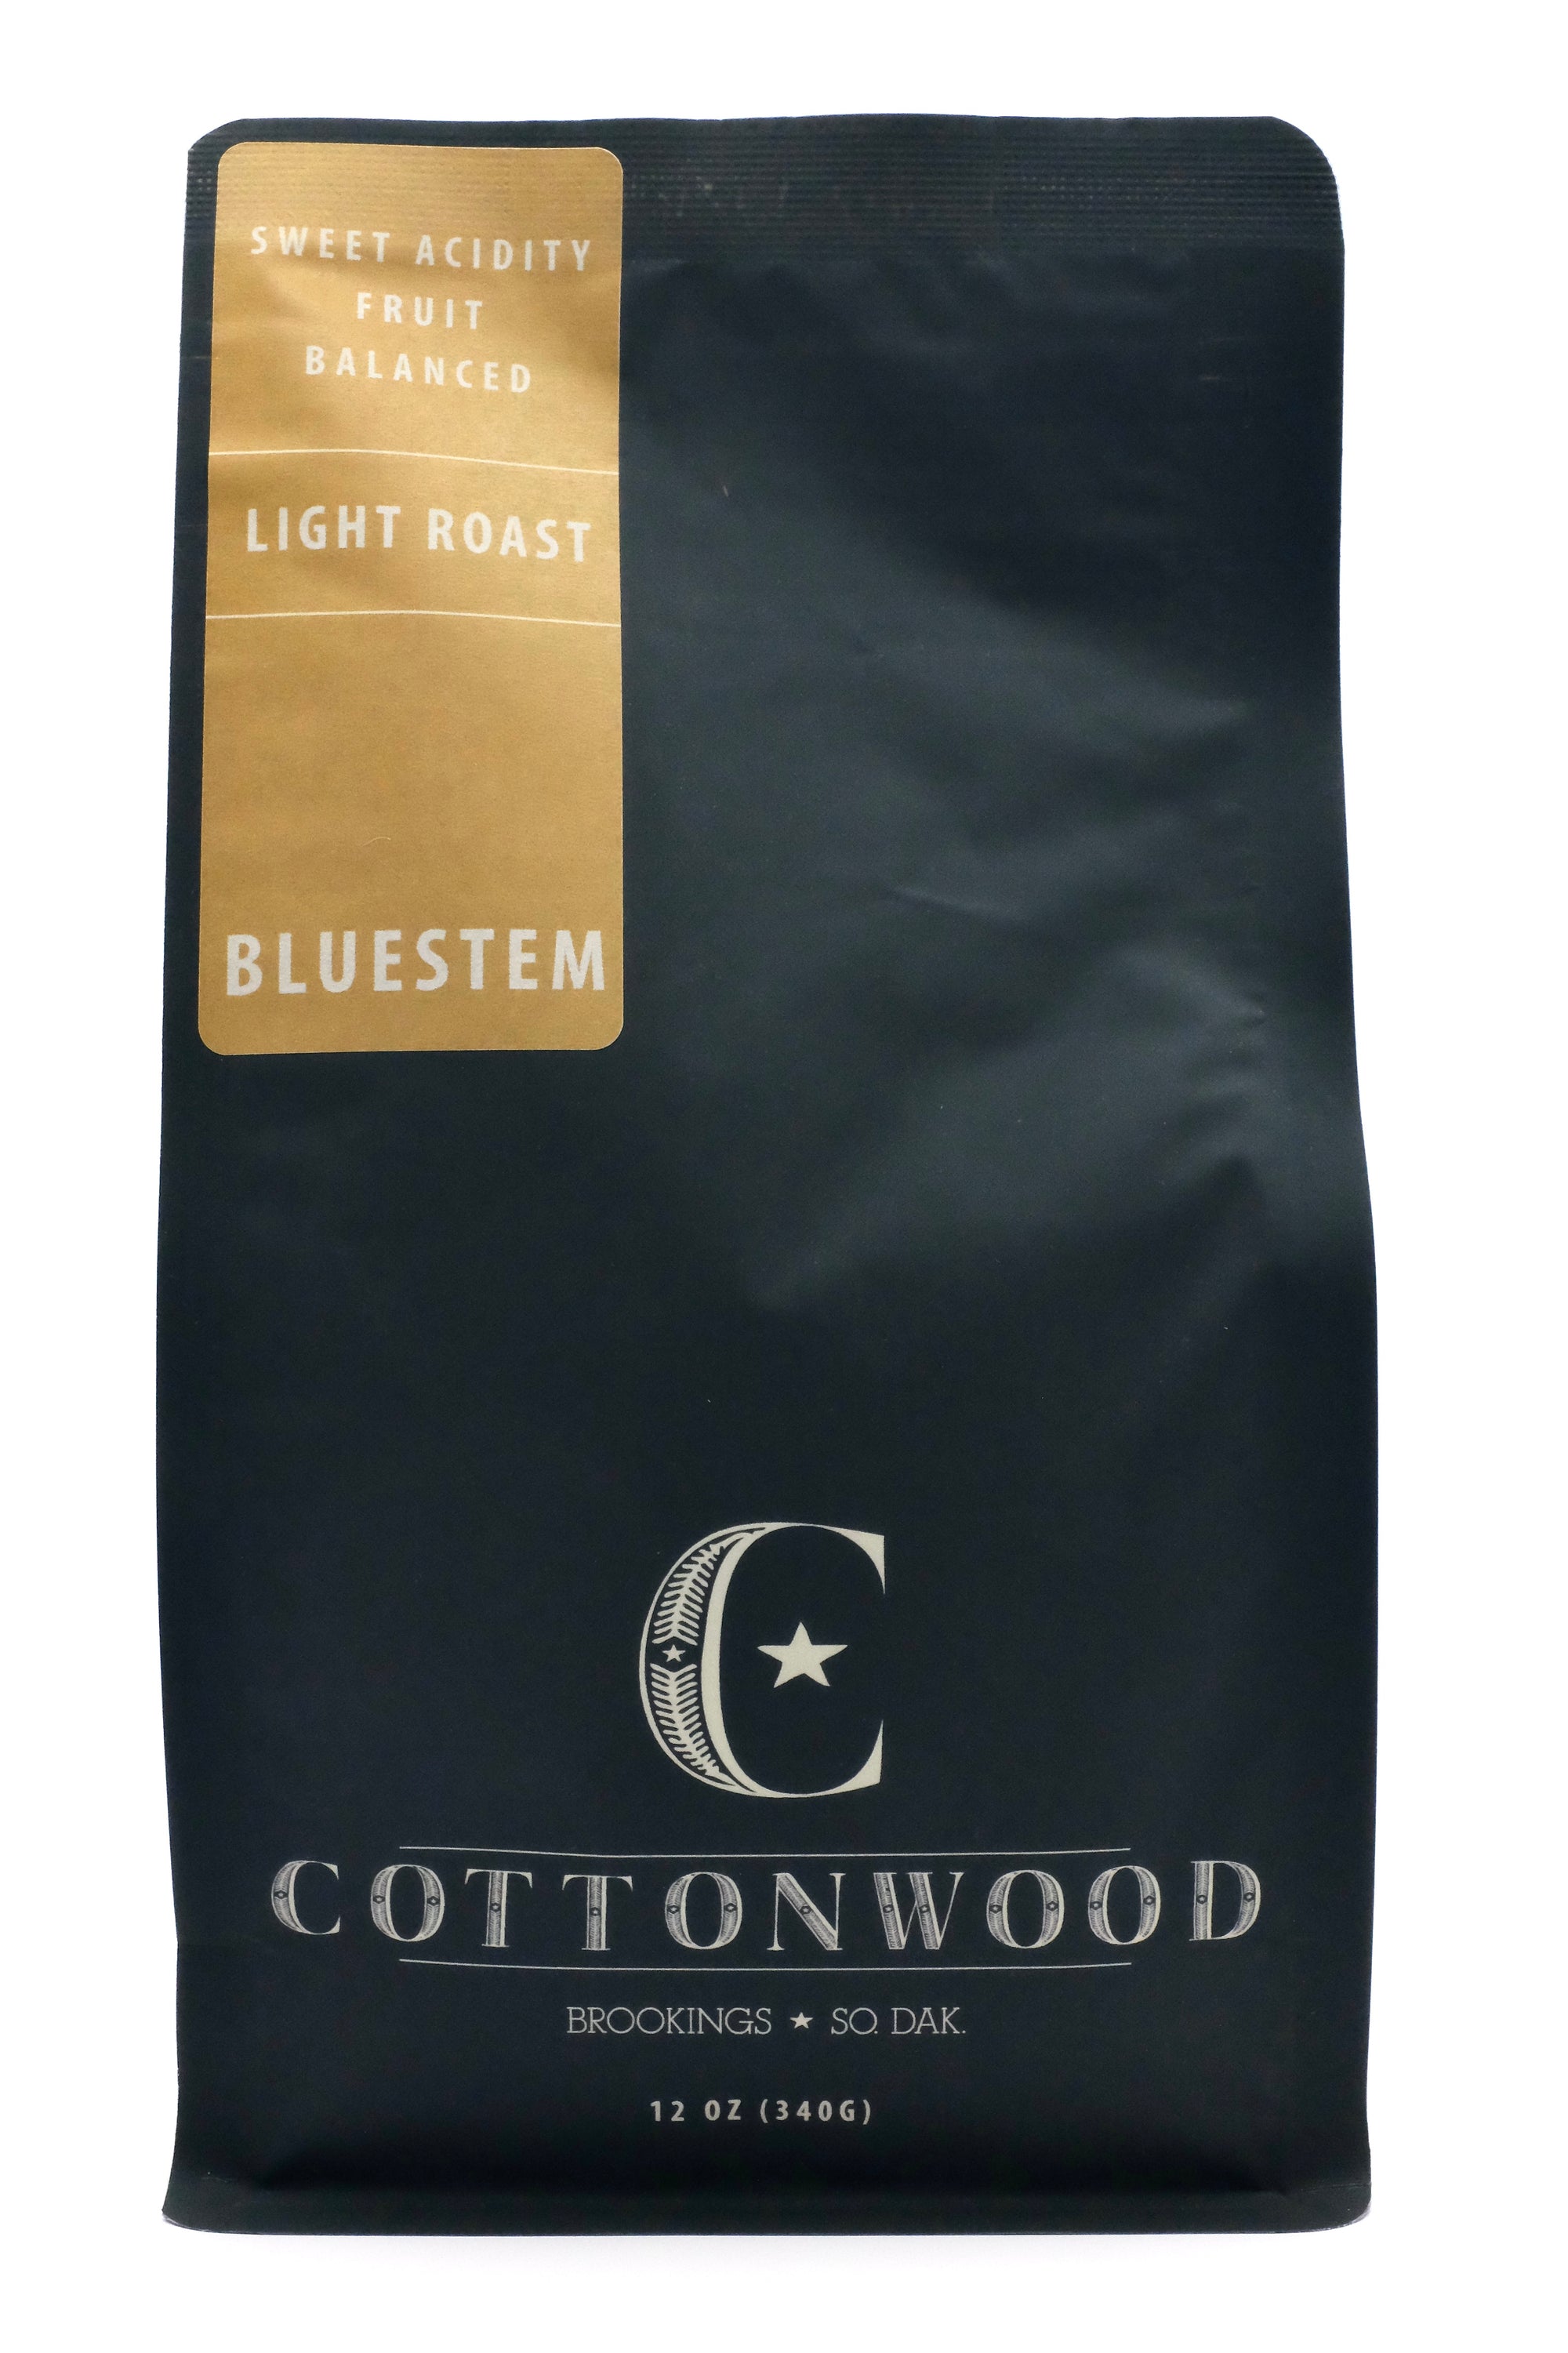 Cottonwood bluestem light roast coffee blend